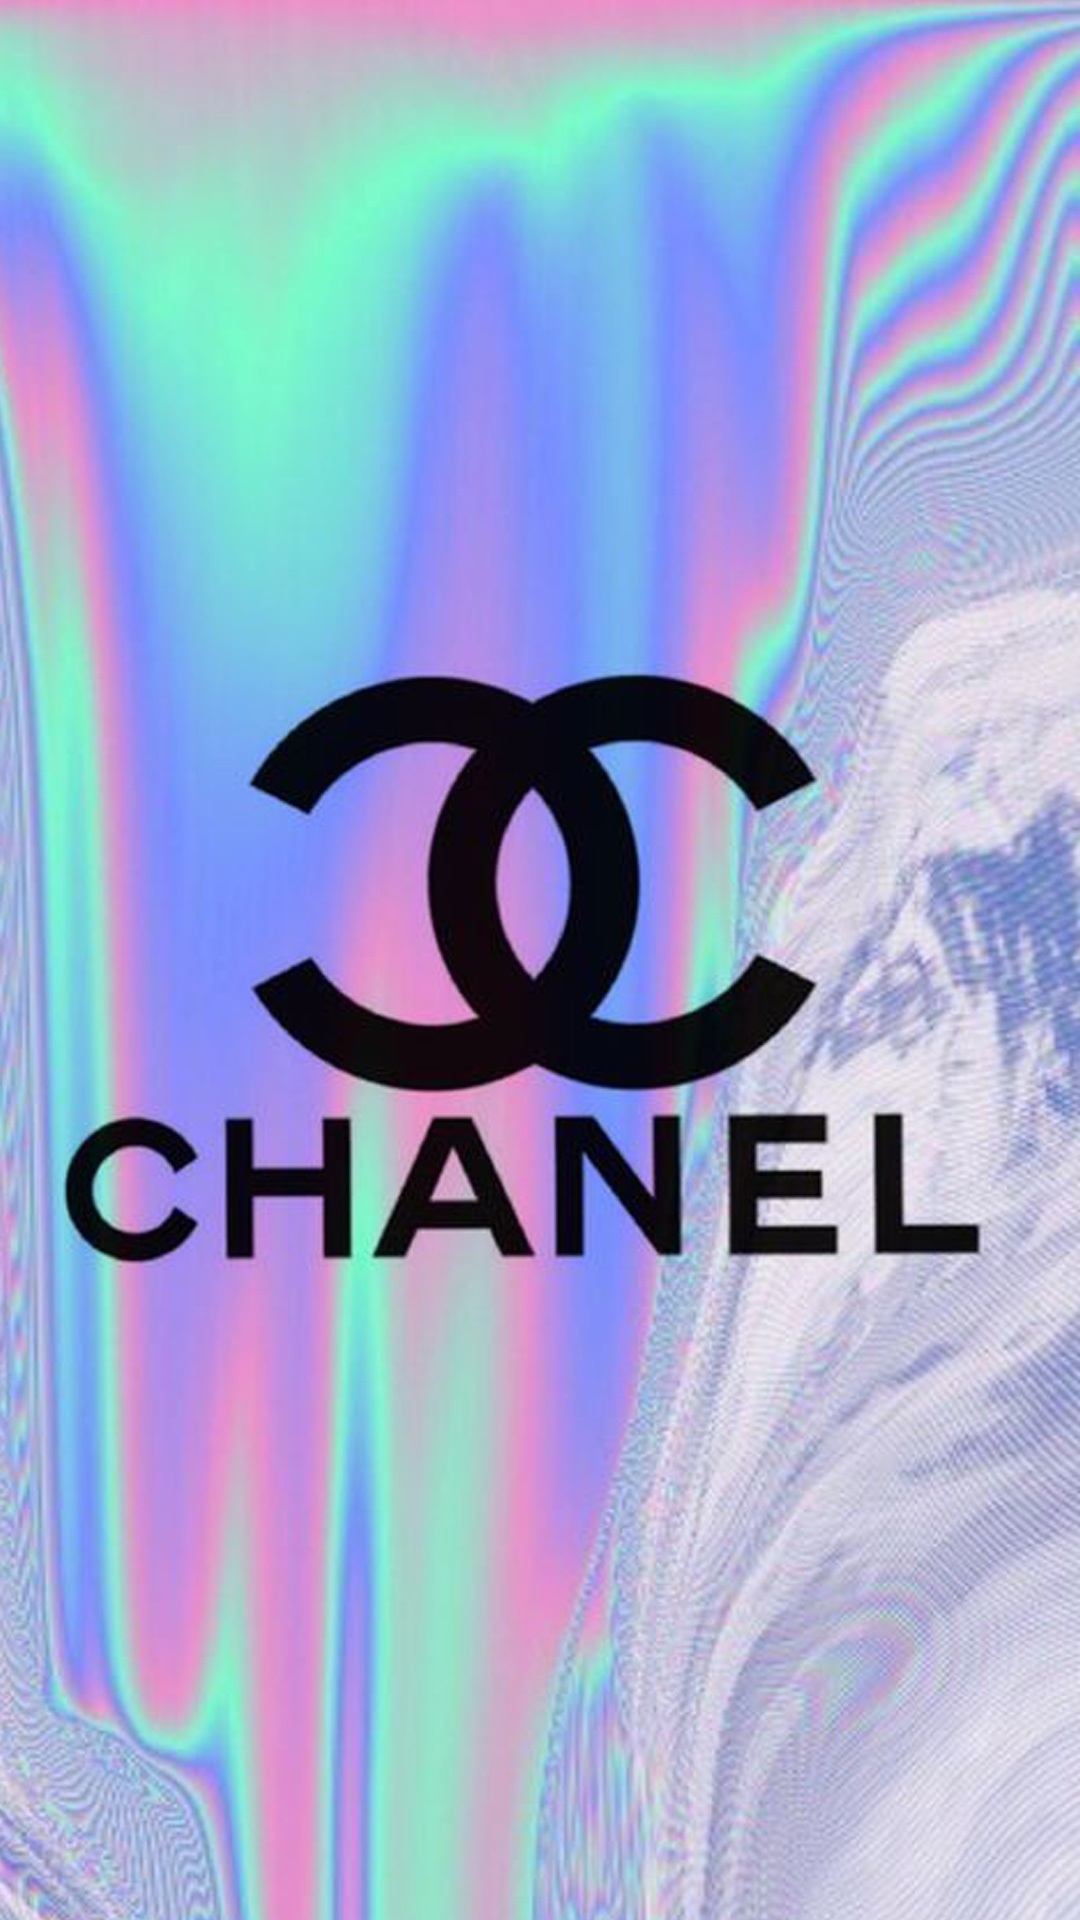 Chanel ブランドのiphonex壁紙 Iphone Wallpapers